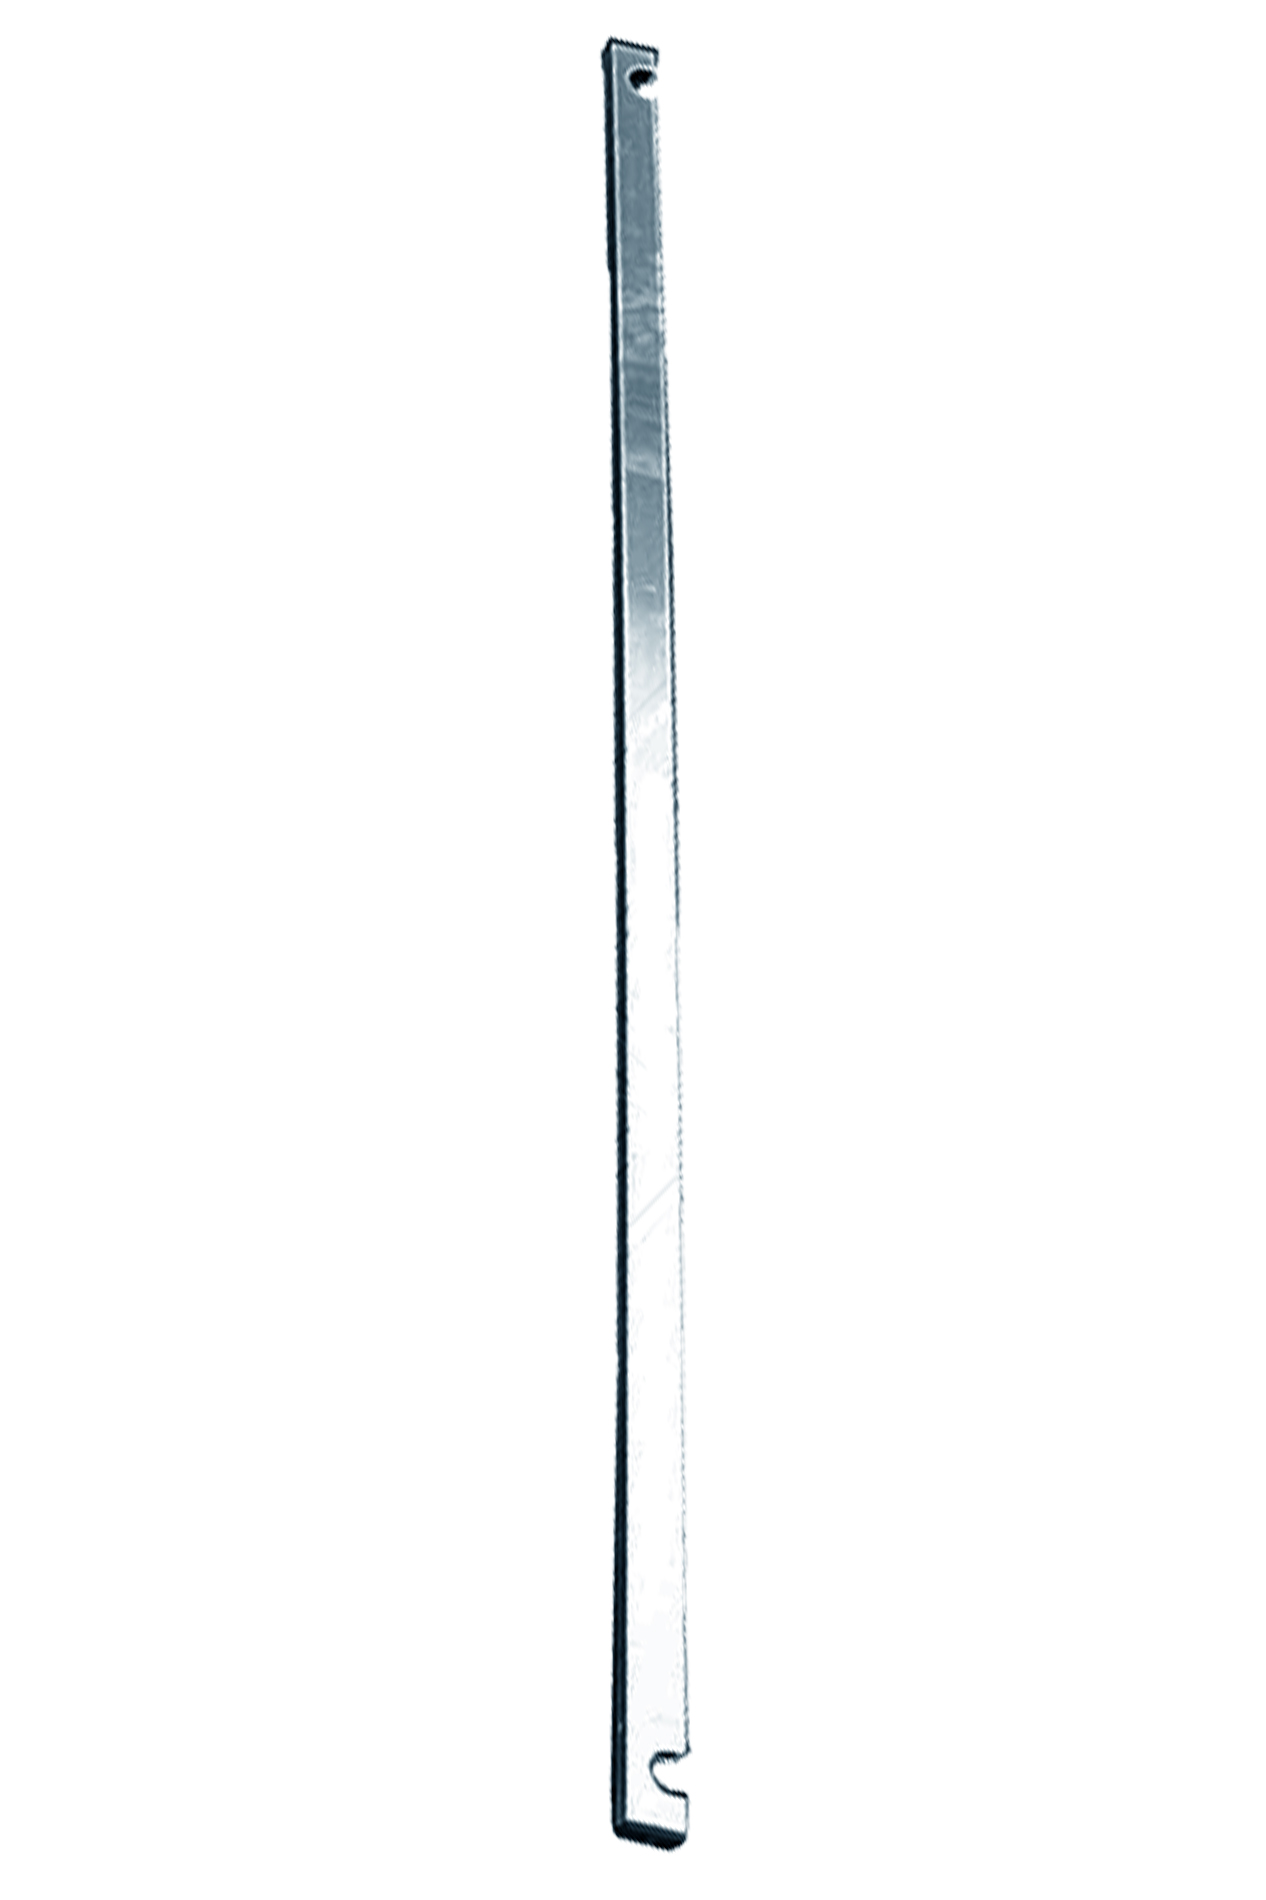 Дополнительное изображение STABILO 100-3 Передвижные подмости, рабочая высота 6,3 м, размер площадки (3.0x0.75 м)